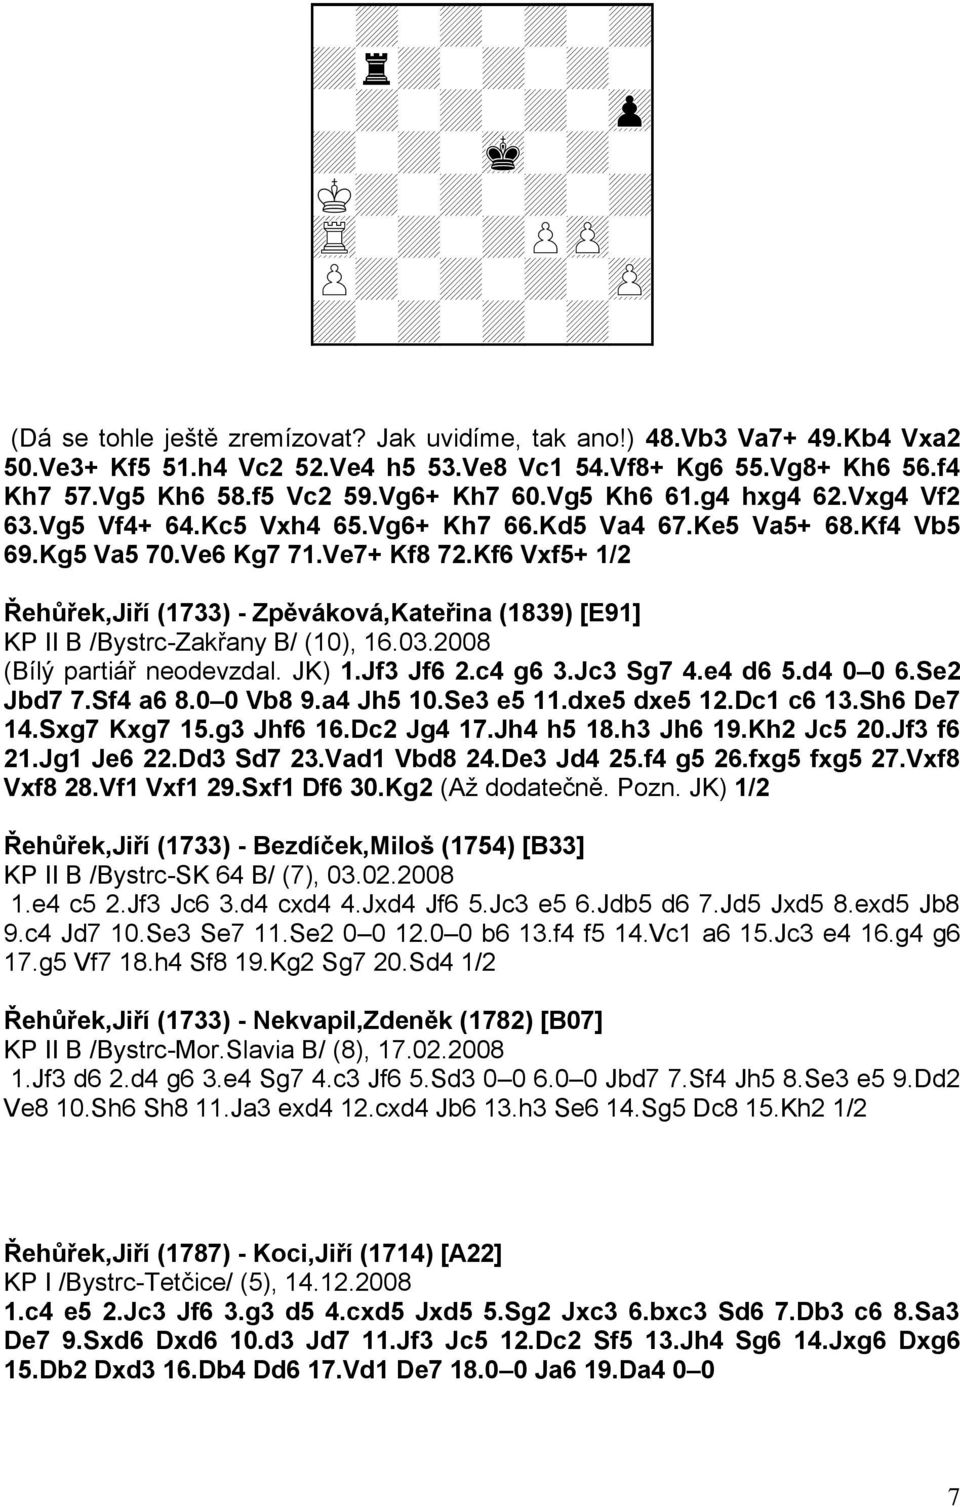 Kg5 Va5 70.Ve6 Kg7 71.Ve7+ Kf8 72.Kf6 Vxf5+ 1/2 Řehůřek,Jiří (1733) - Zpěváková,Kateřina (1839) [E91] KP II B /Bystrc-Zakřany B/ (10), 16.03.2008 (Bílý partiář neodevzdal. JK) 1.Jf3 Jf6 2.c4 g6 3.